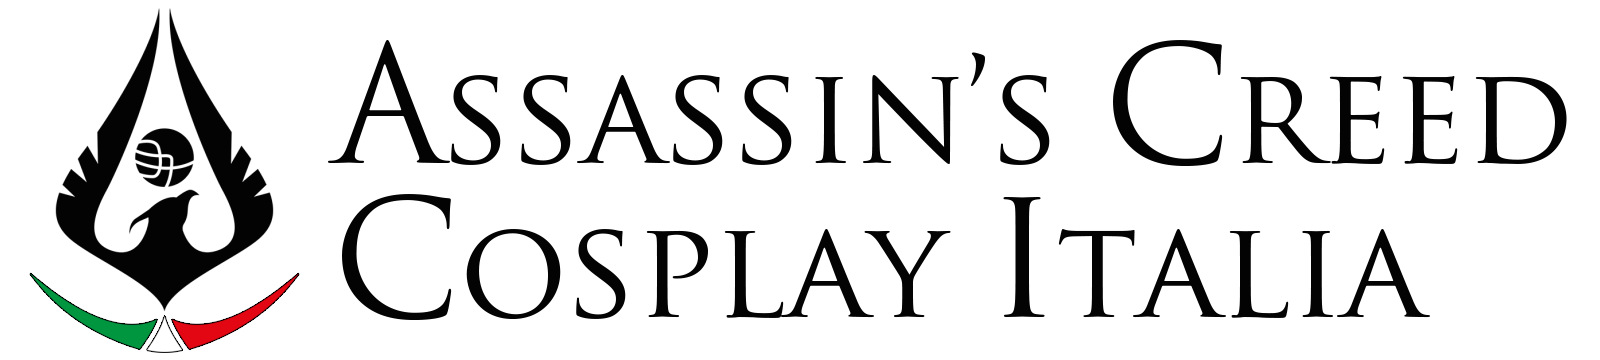 Assassin's Creed Cosplay Italia